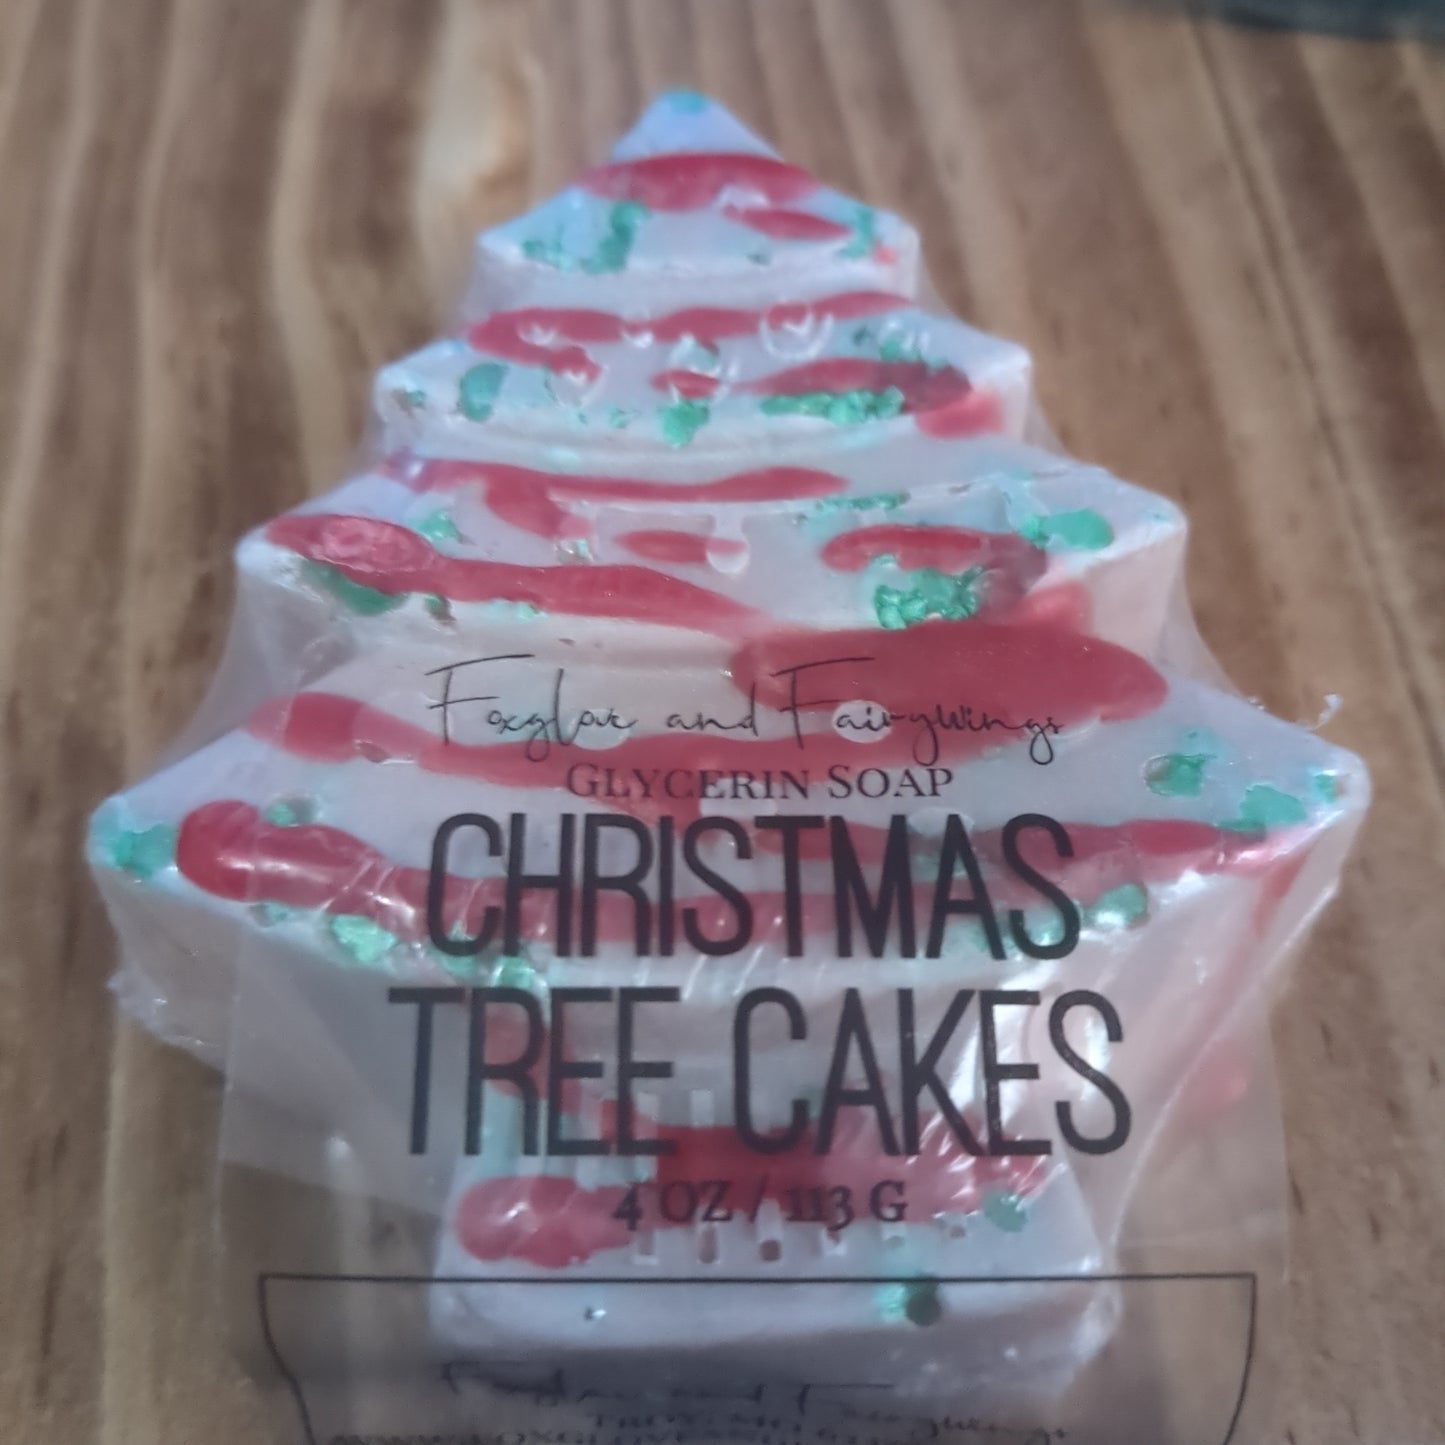 Glycerin Soap - Christmas Tree Cakes